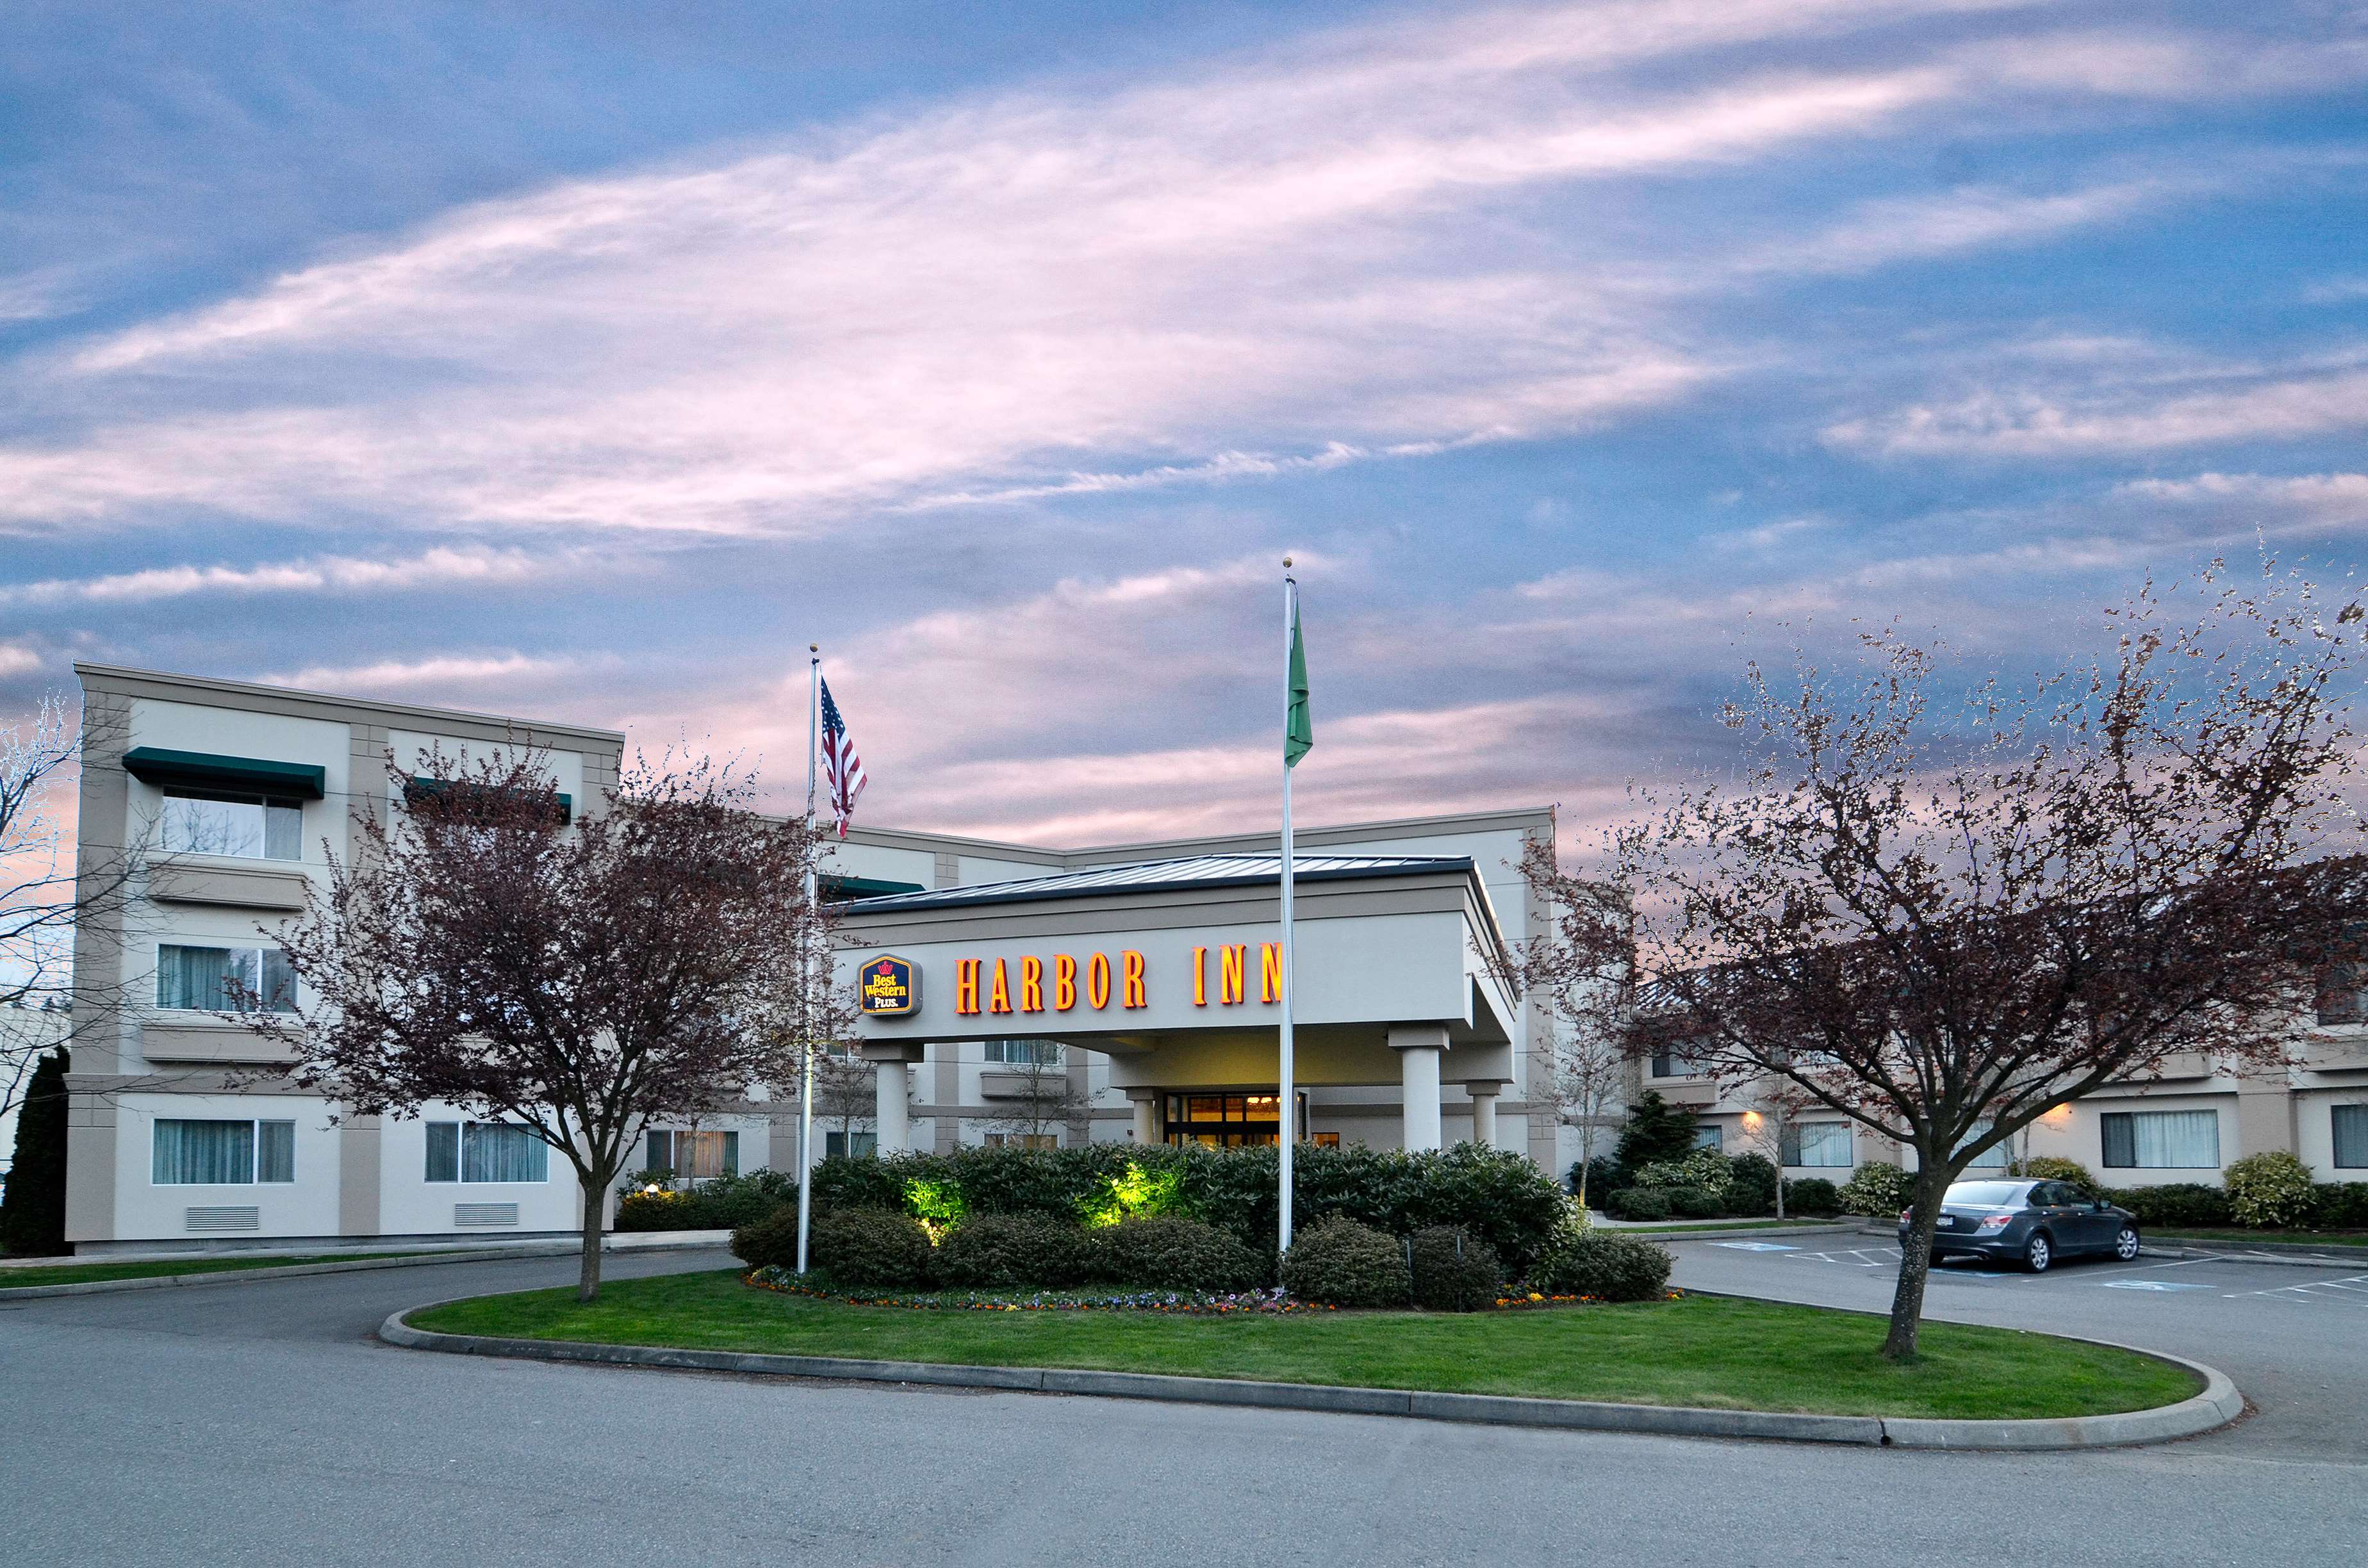 Best Western Plus Edmonds Harbor Inn in Edmonds, WA - (425) 771-5...